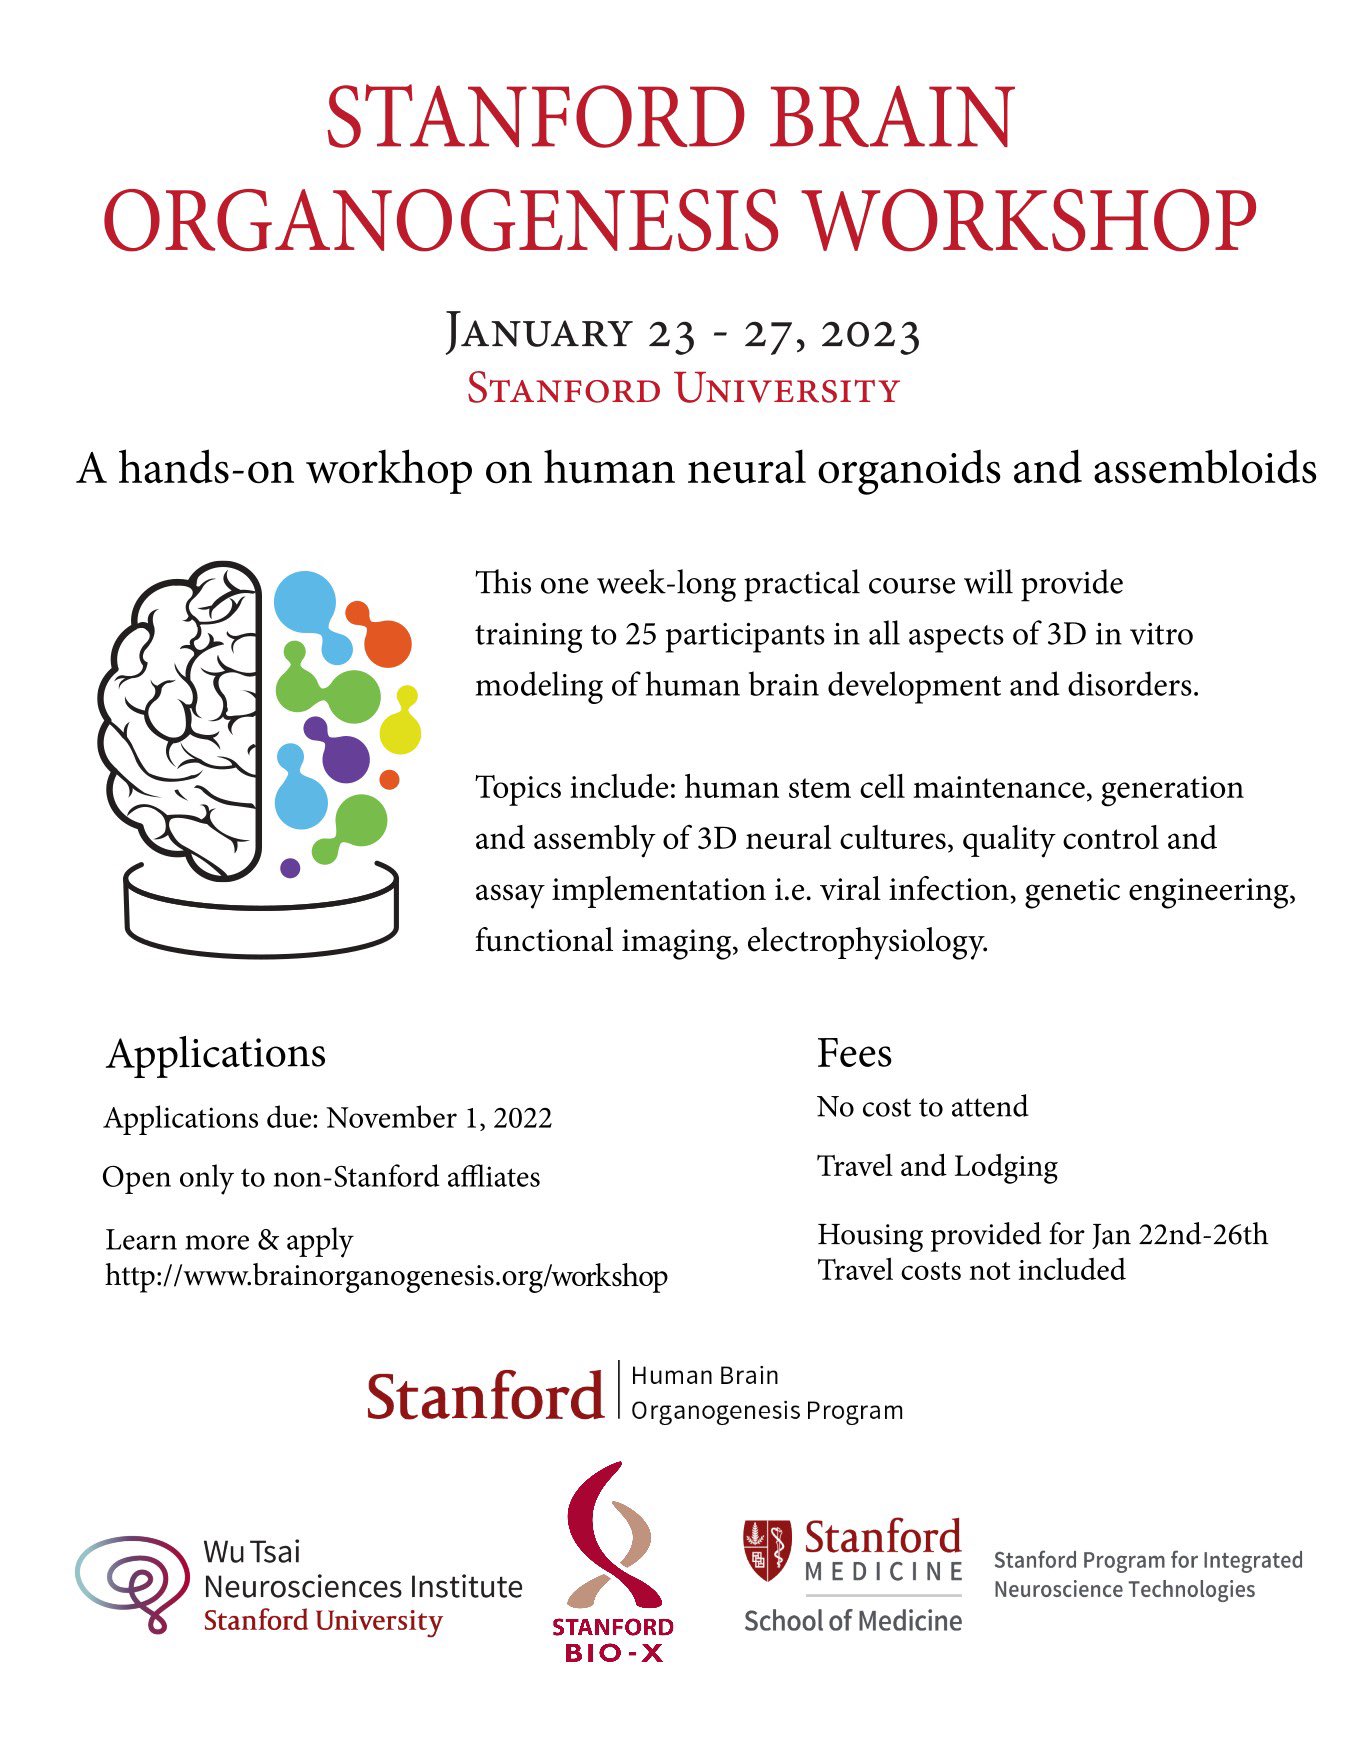 Team - Stanford Brain Organogenesis